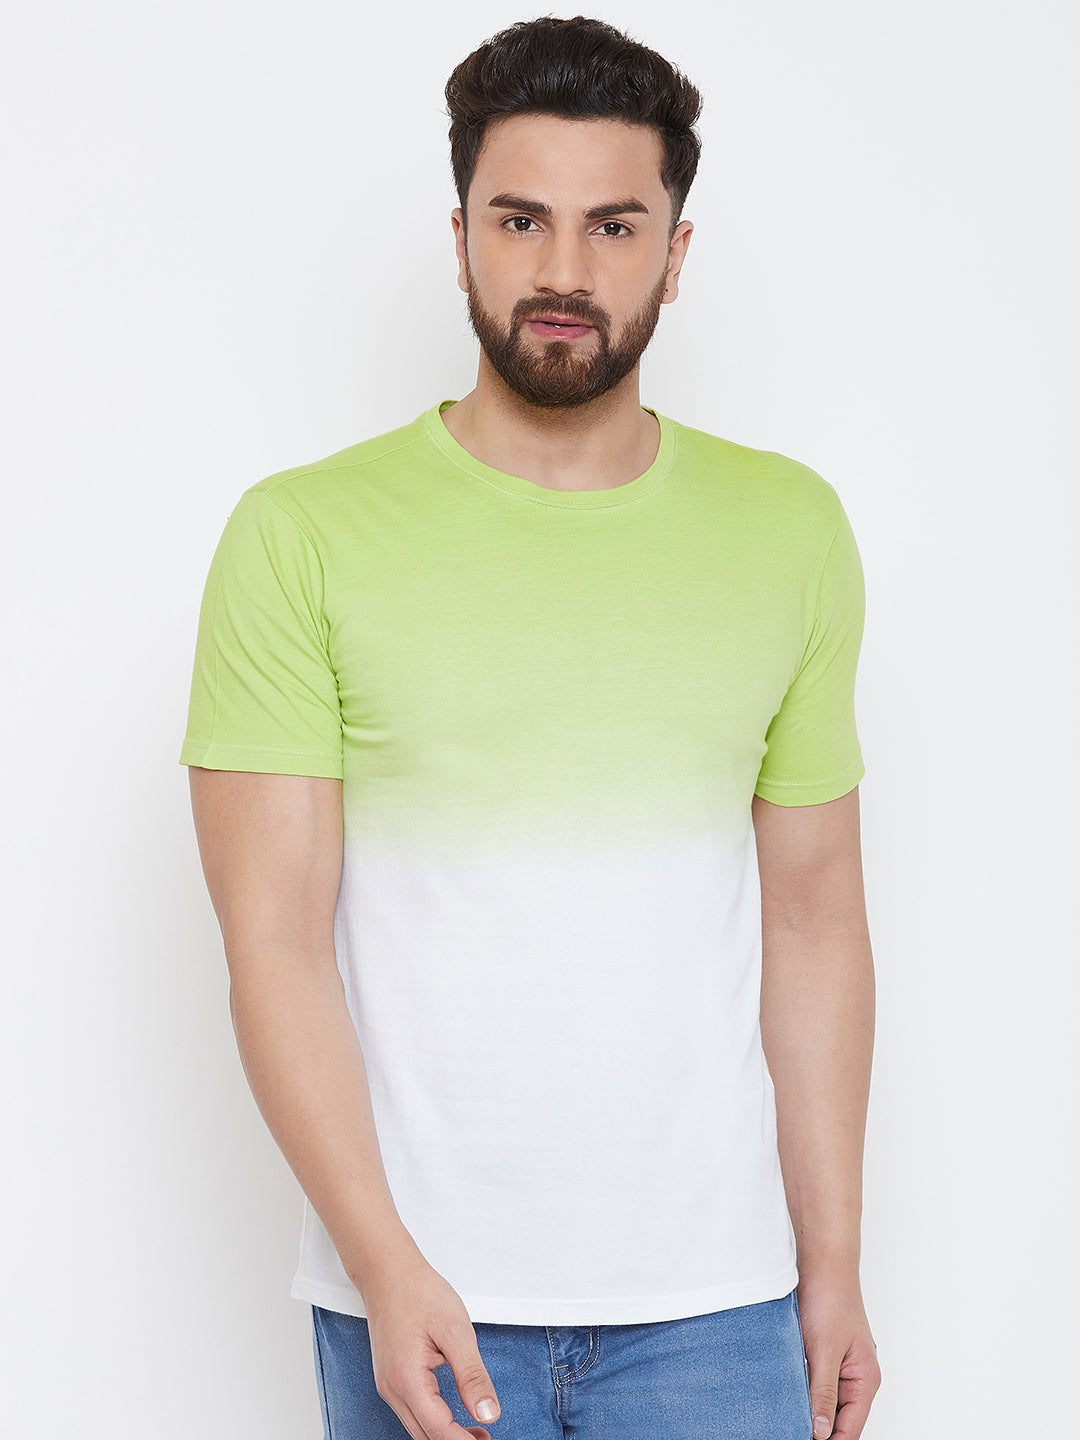 White/Green Half Sleeve Tie Dye Round Neck T-Shirt